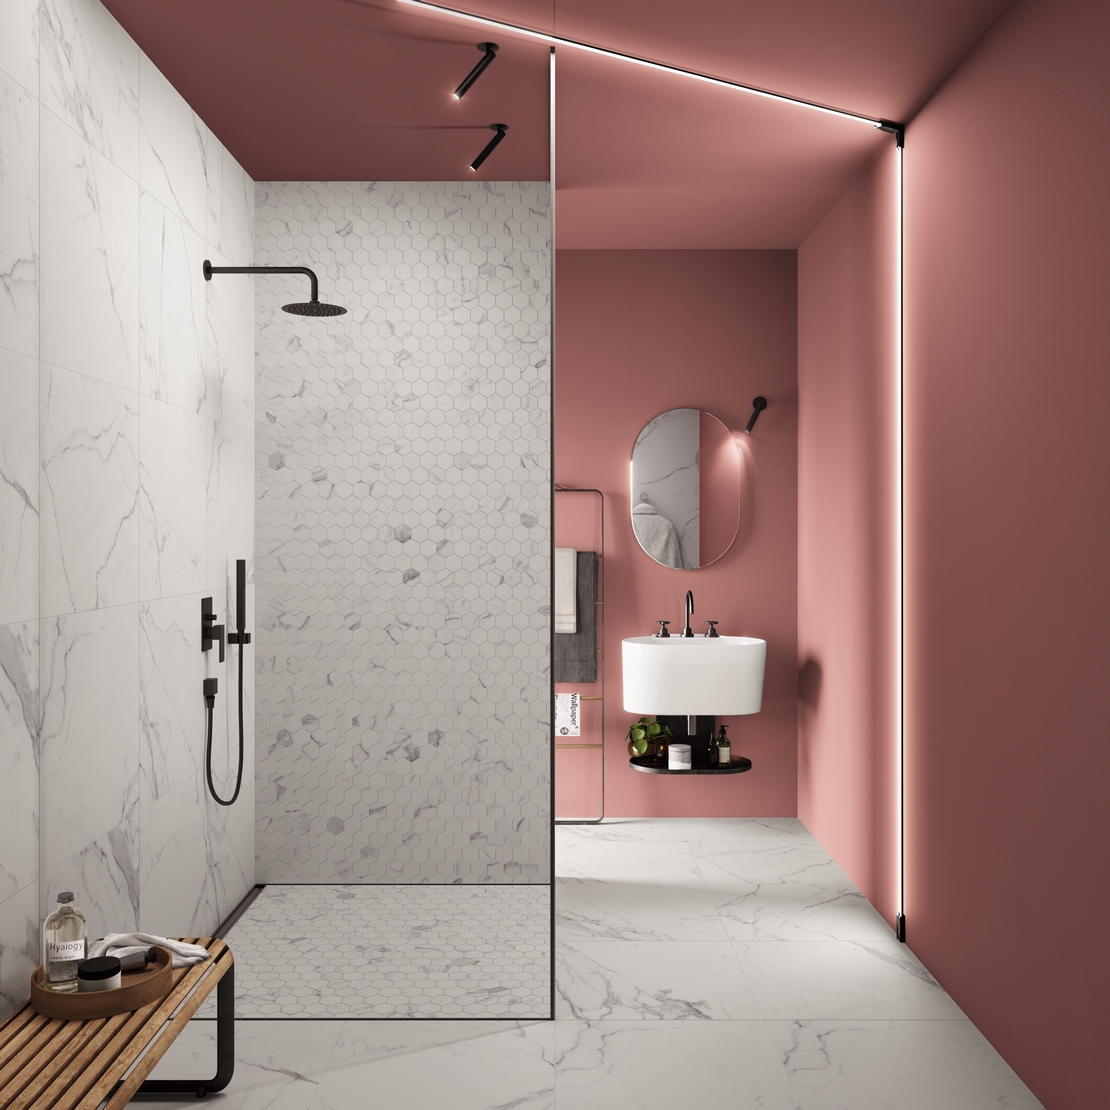 Salle de bains de luxe style industriel avec douche. Effet marbre blanc et mur rose. - Inspirations Iperceramica